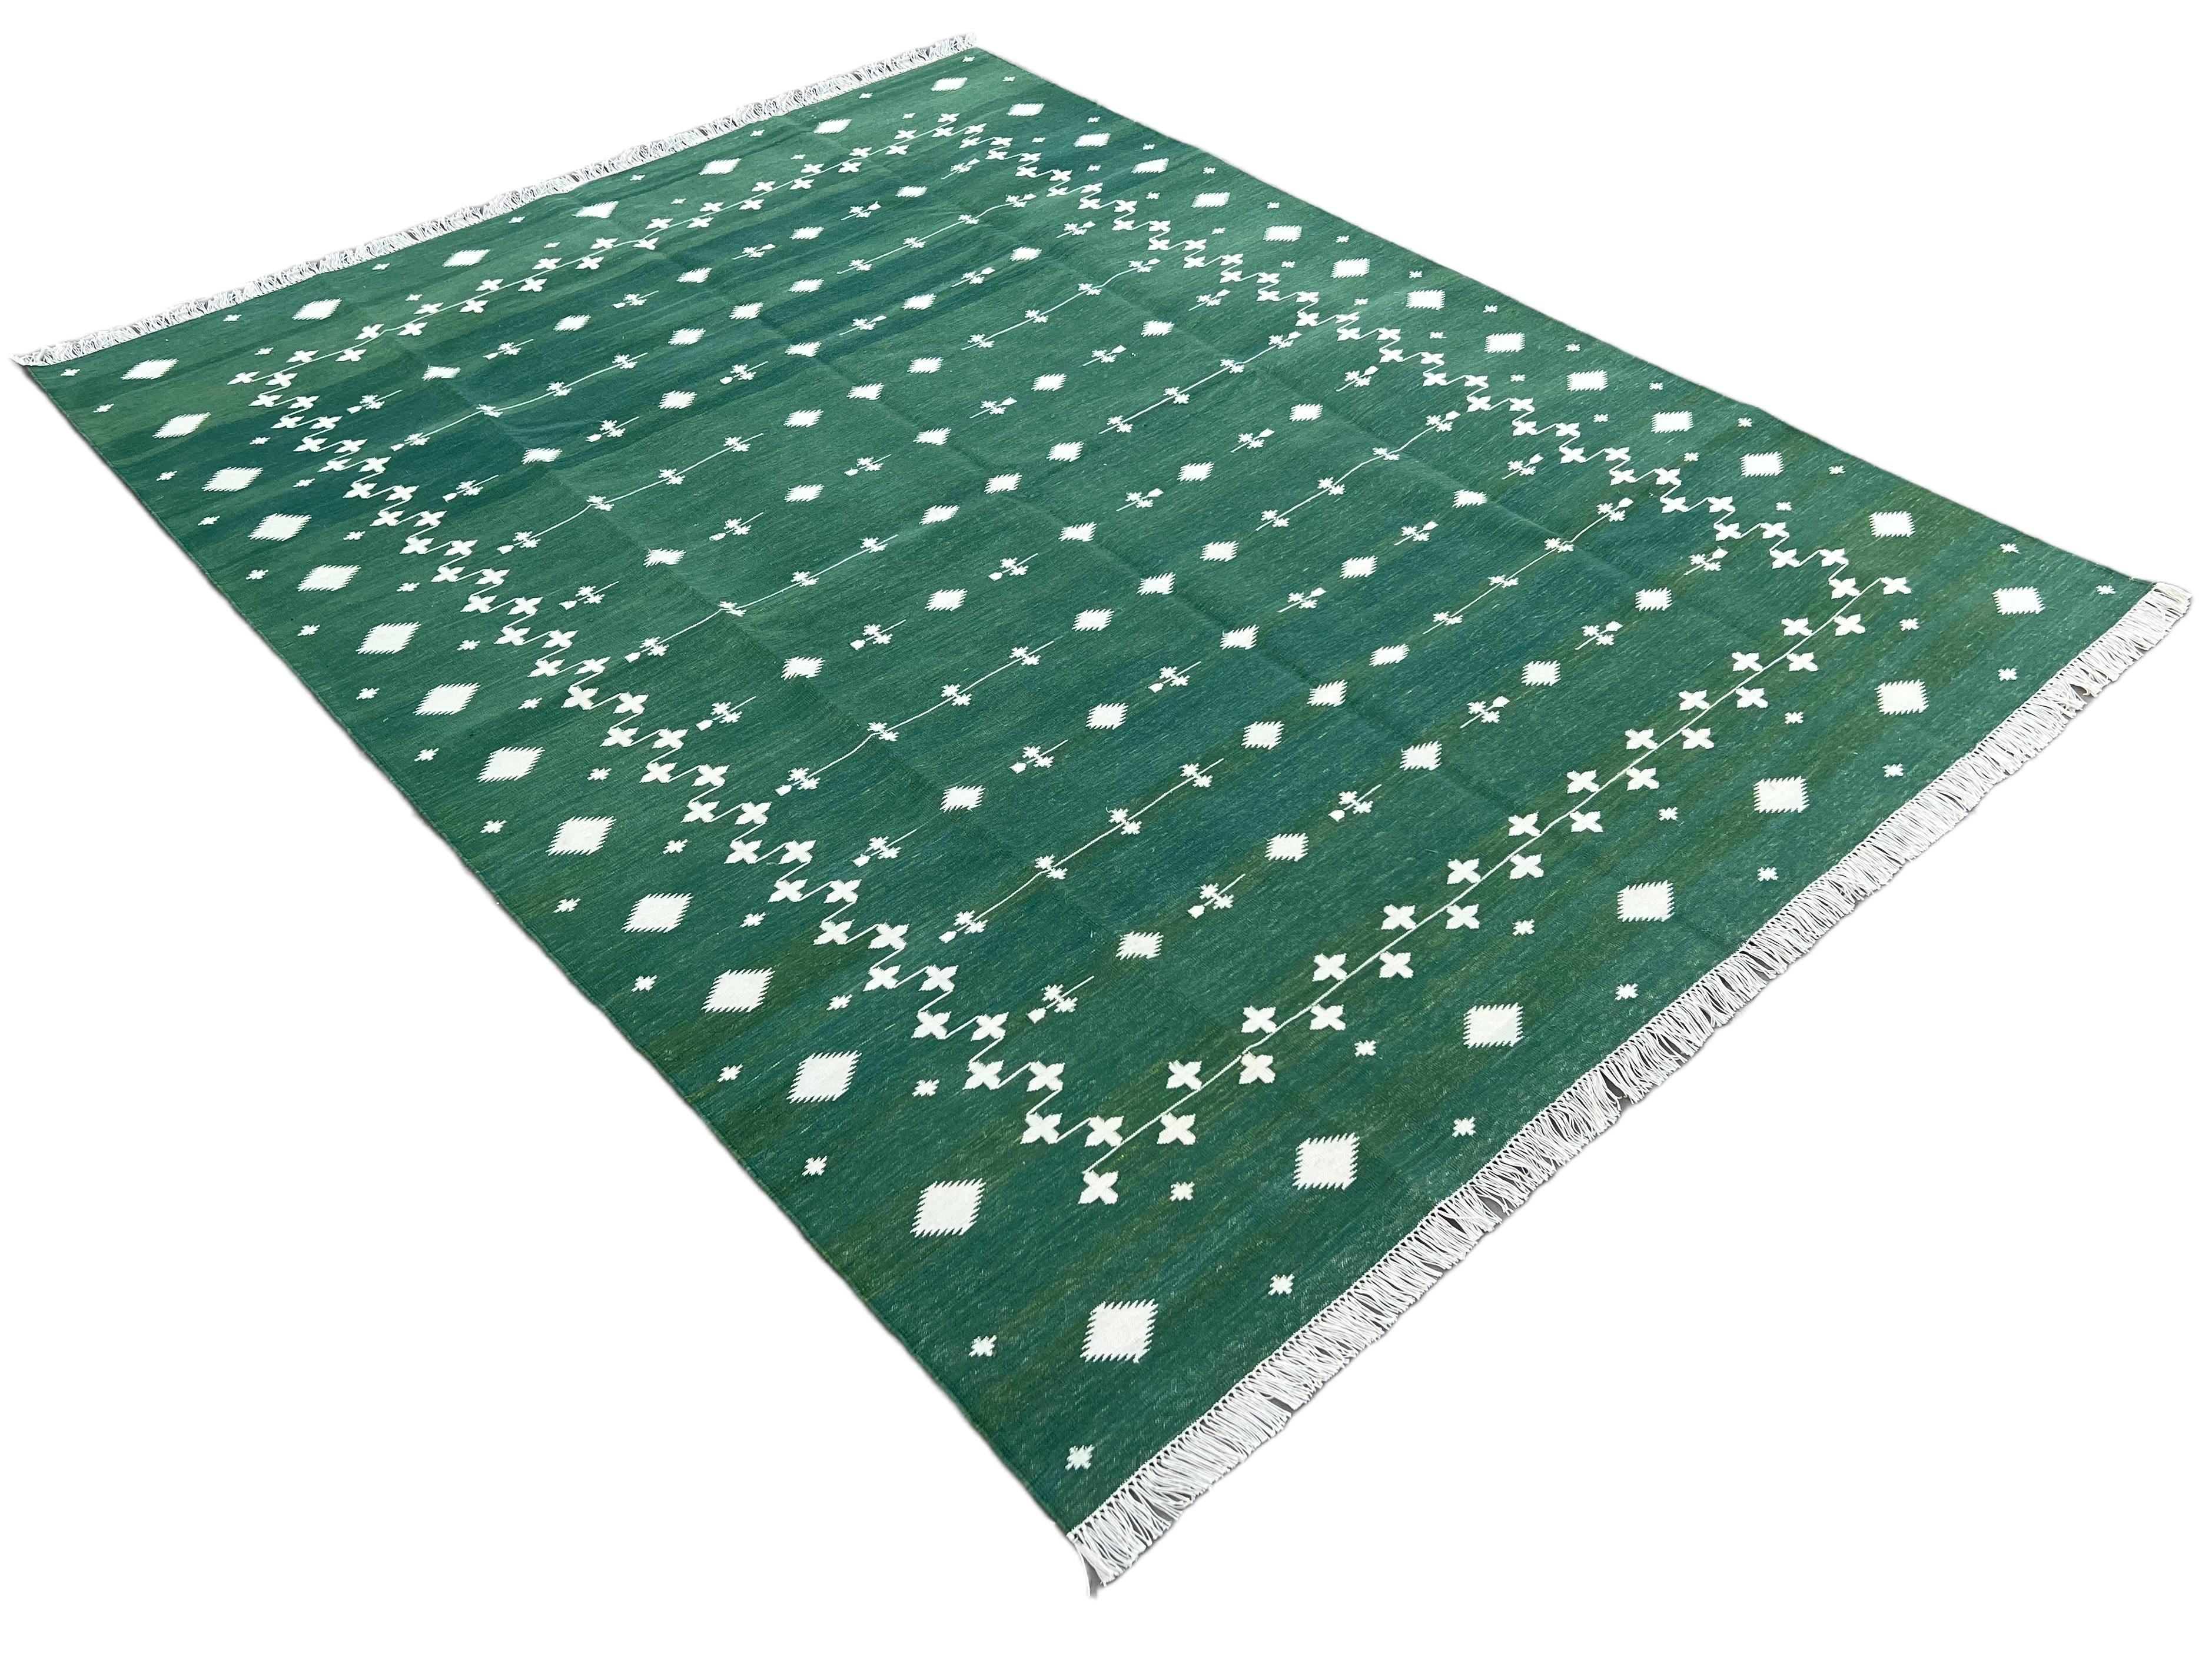 Baumwolle pflanzlich gefärbt Reversible Forest Green & White Indian Shooting Star Teppich - 6'x9'
Diese speziellen flachgewebten Dhurries werden aus 15-fachem Garn aus 100% Baumwolle handgewebt. Aufgrund der speziellen Fertigungstechniken, die zur